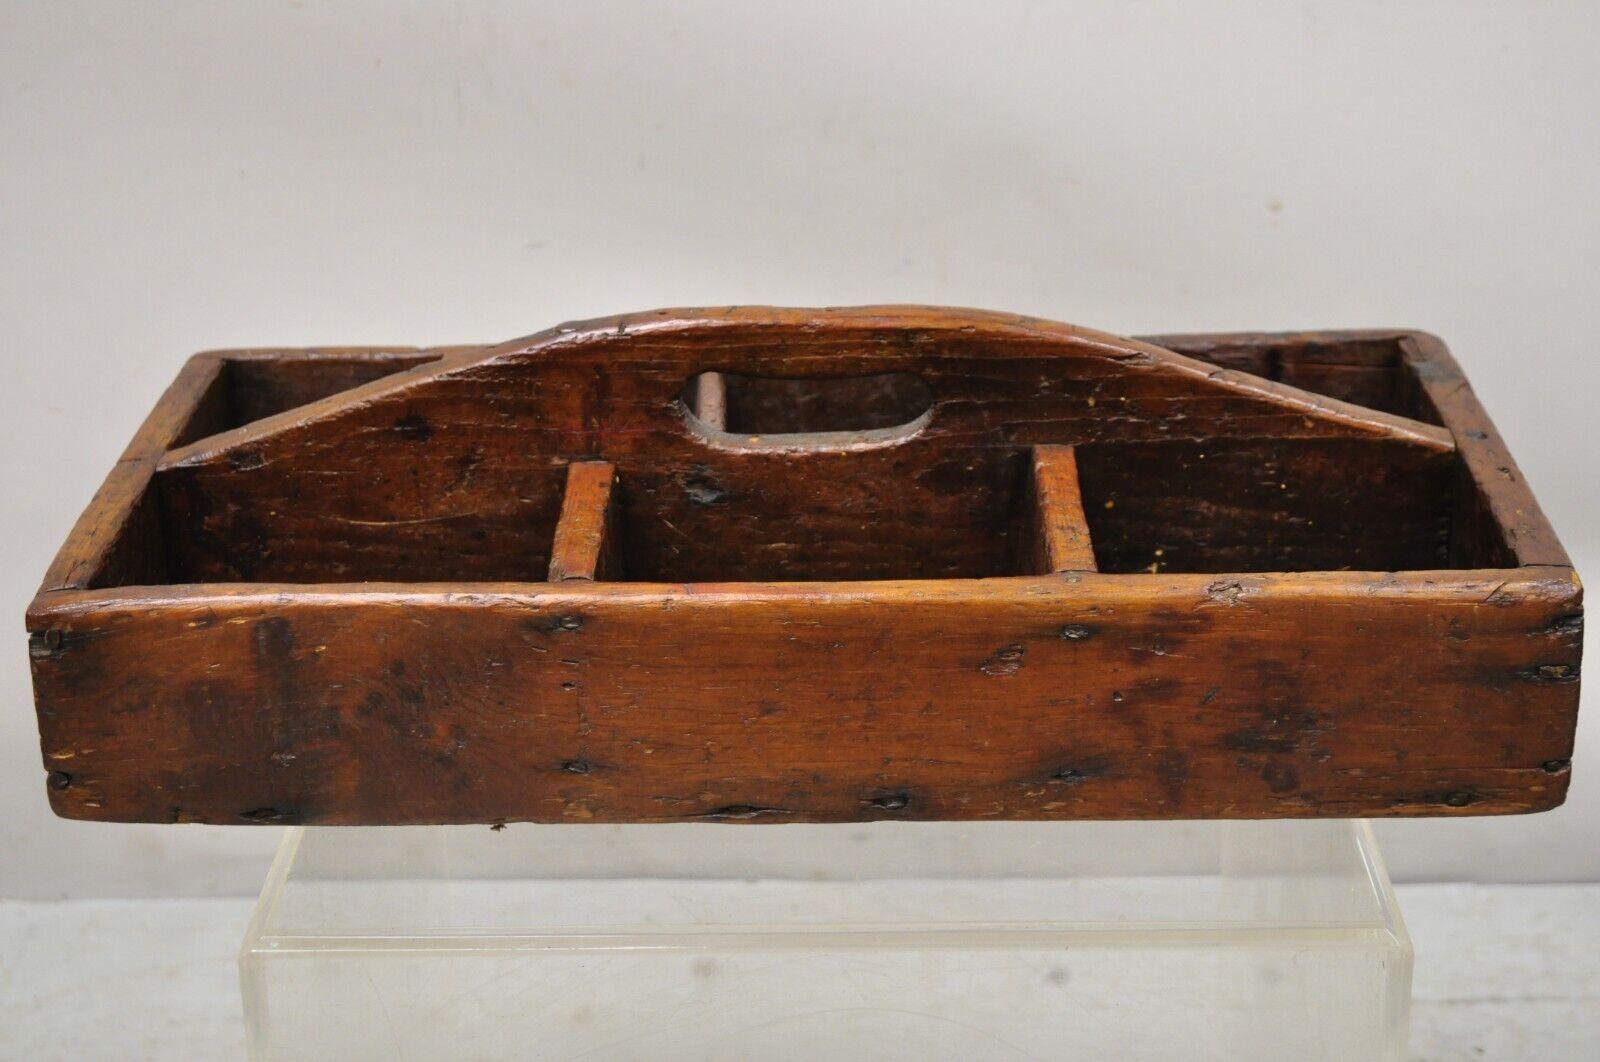 Antique French provincial country wooden storage caddy tool box desk organizer. Cet article présente un fini vieilli attrayant, une magnifique patine, une construction en bois massif, une fabrication de qualité, un style et une forme exceptionnels.